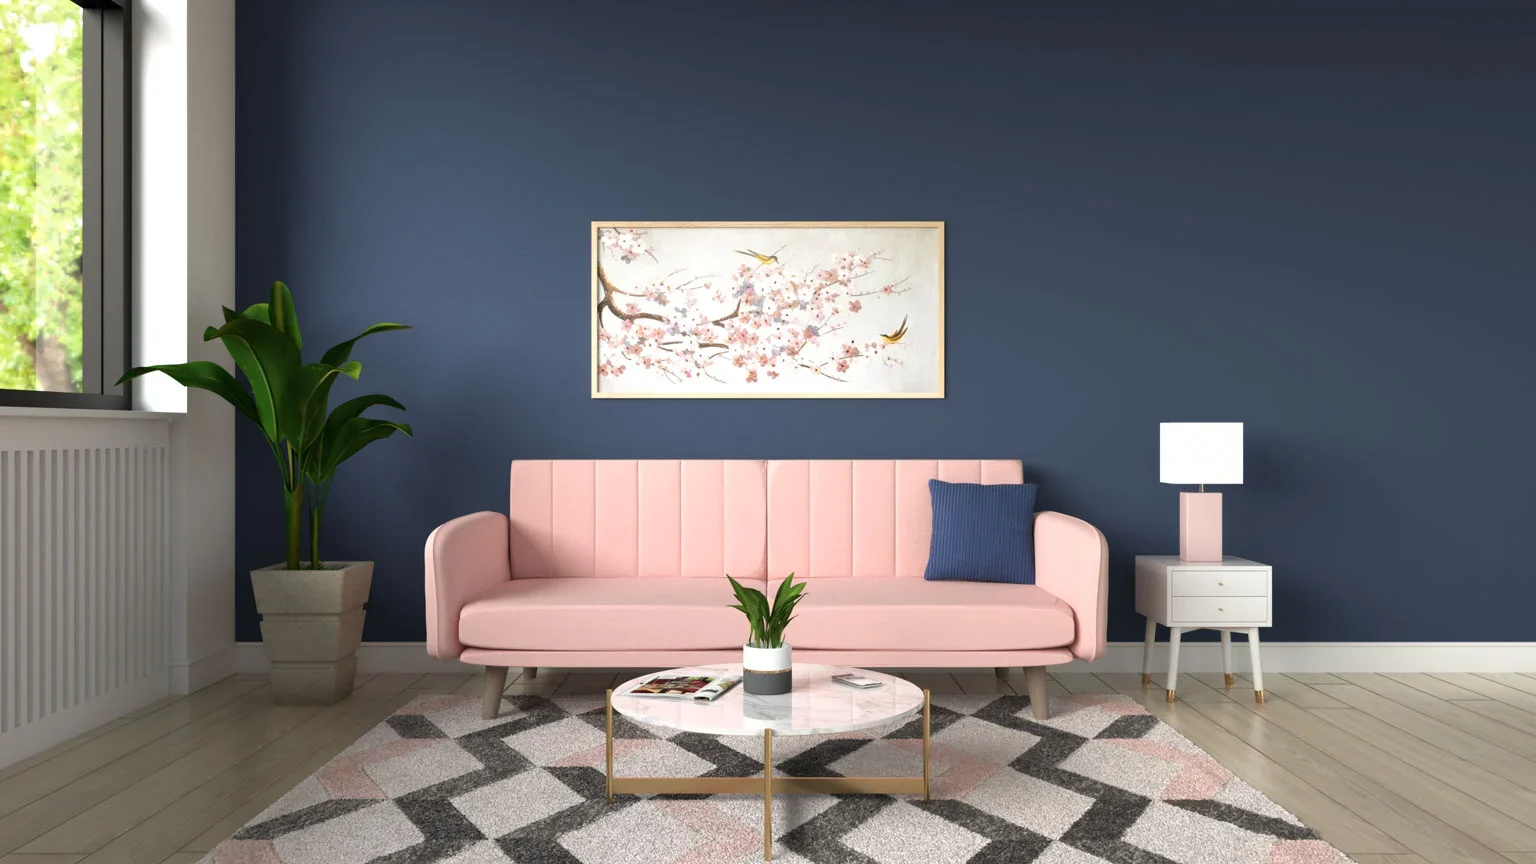 Inspirasi Warna Dinding untuk Furnitur Warna Pink